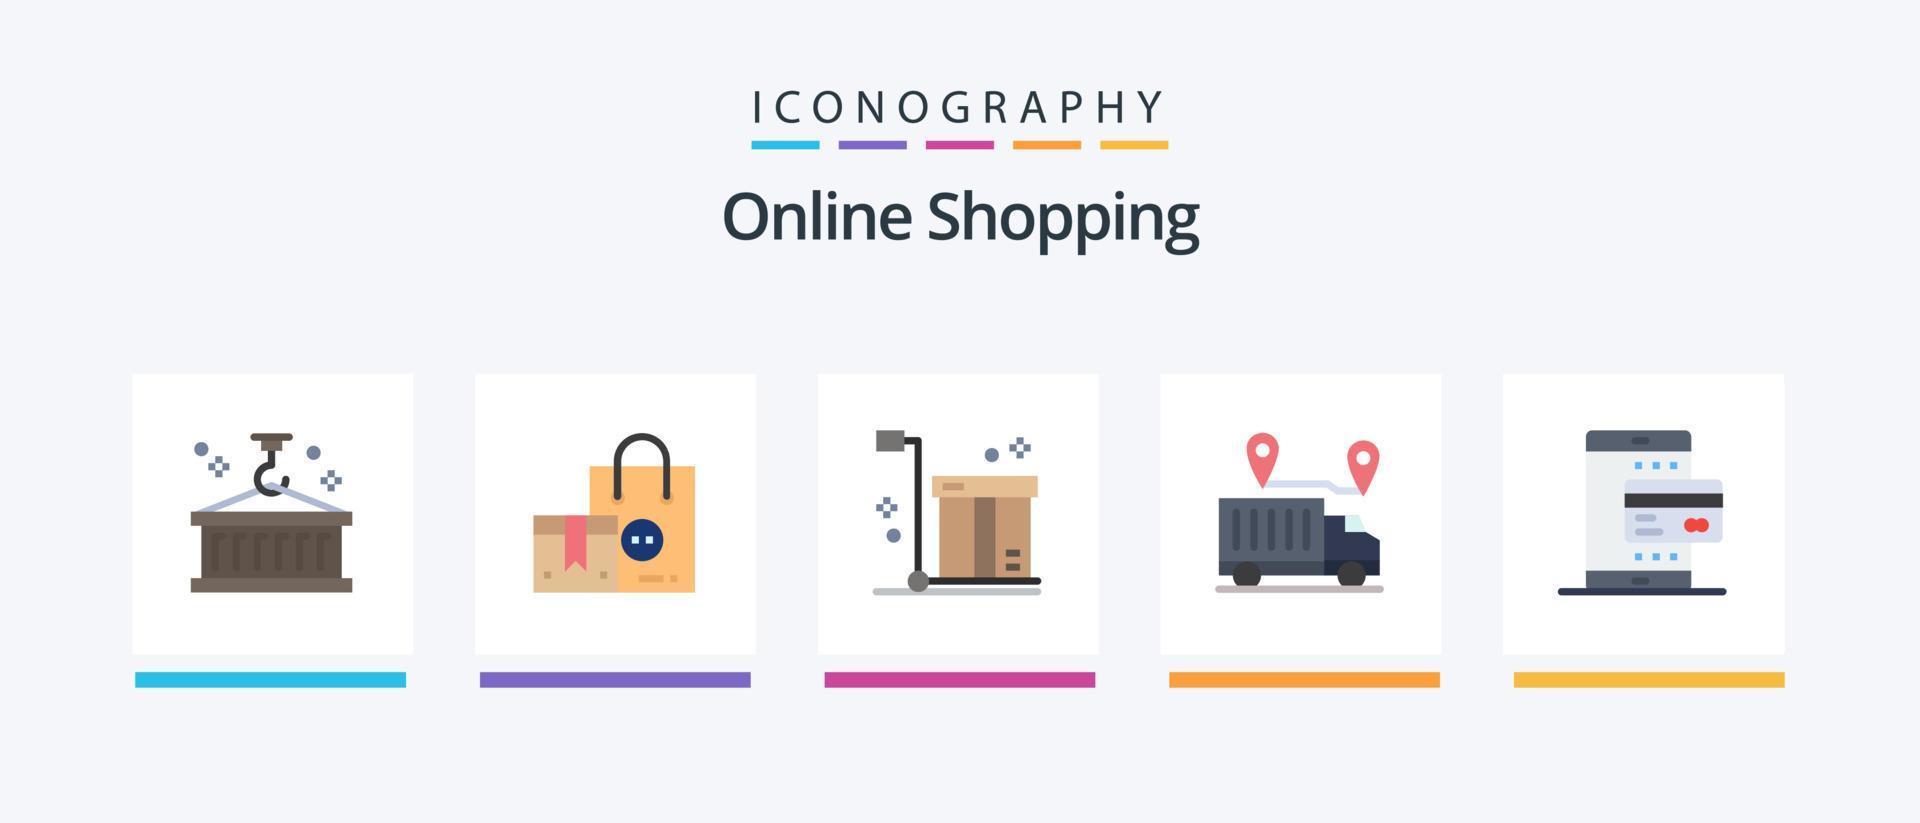 pacote de ícones de 5 planos de compras on-line, incluindo transporte. Entrega. Shopping. produtos. logística. design de ícones criativos vetor